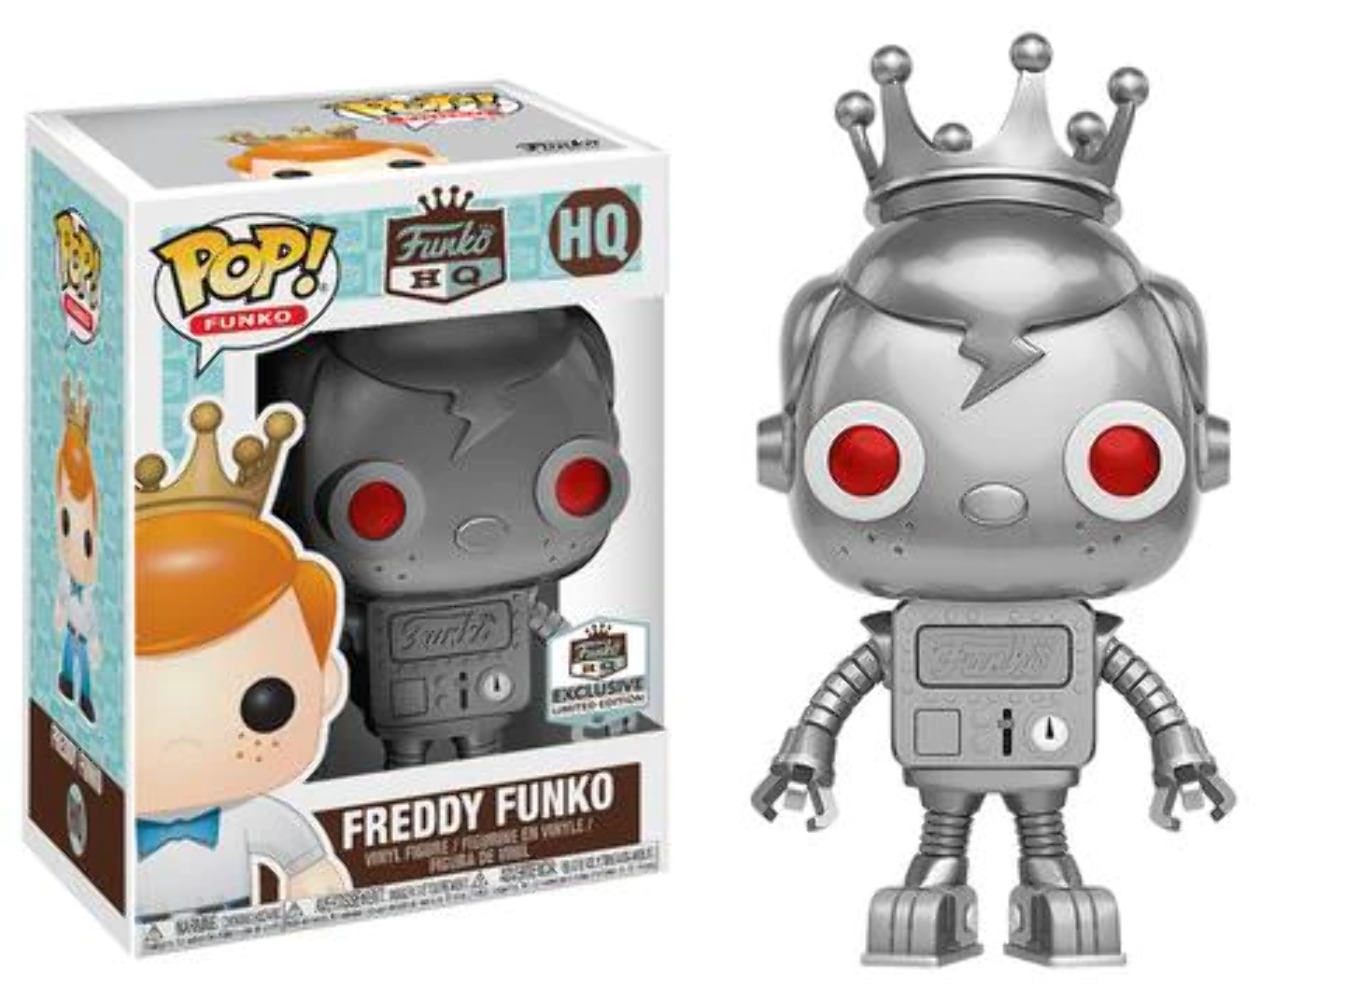 Funko POP Freddy Funko (Silver Robot)(Funko HQ Exclusive) #HQ